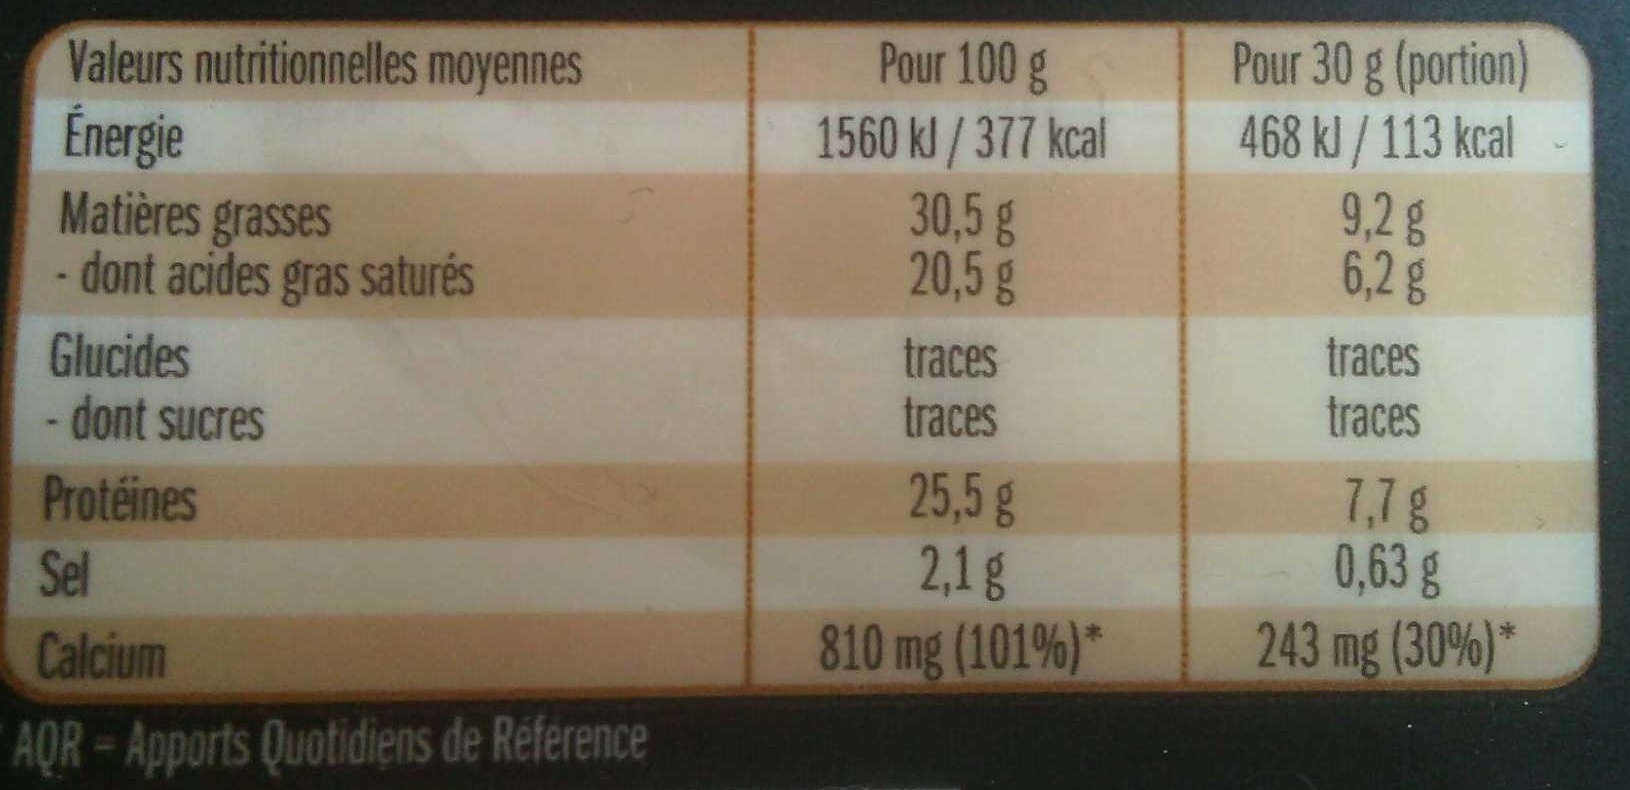 Sélection intense - Fromage au lait pasteurisé - Nutrition facts - fr